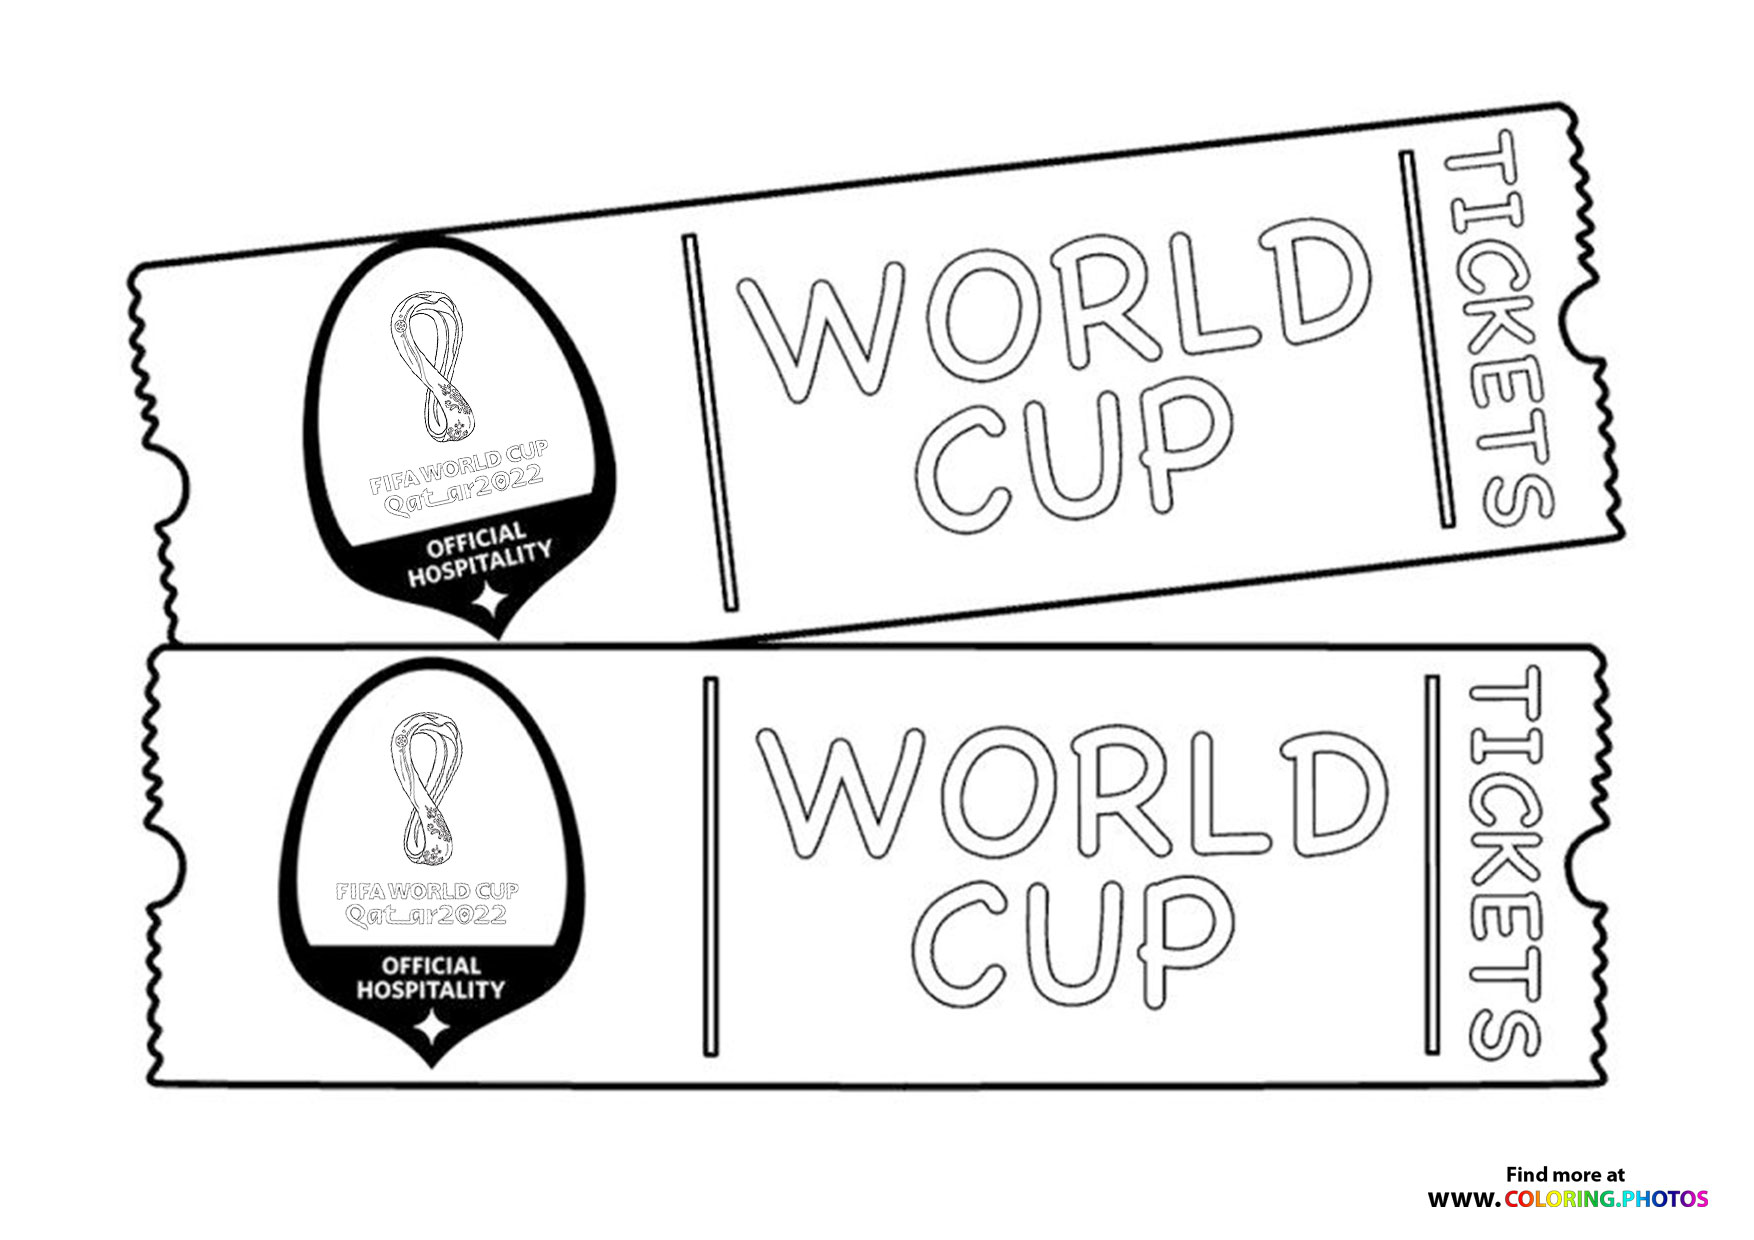 Fifa World Cup Qatar 2022 tickets